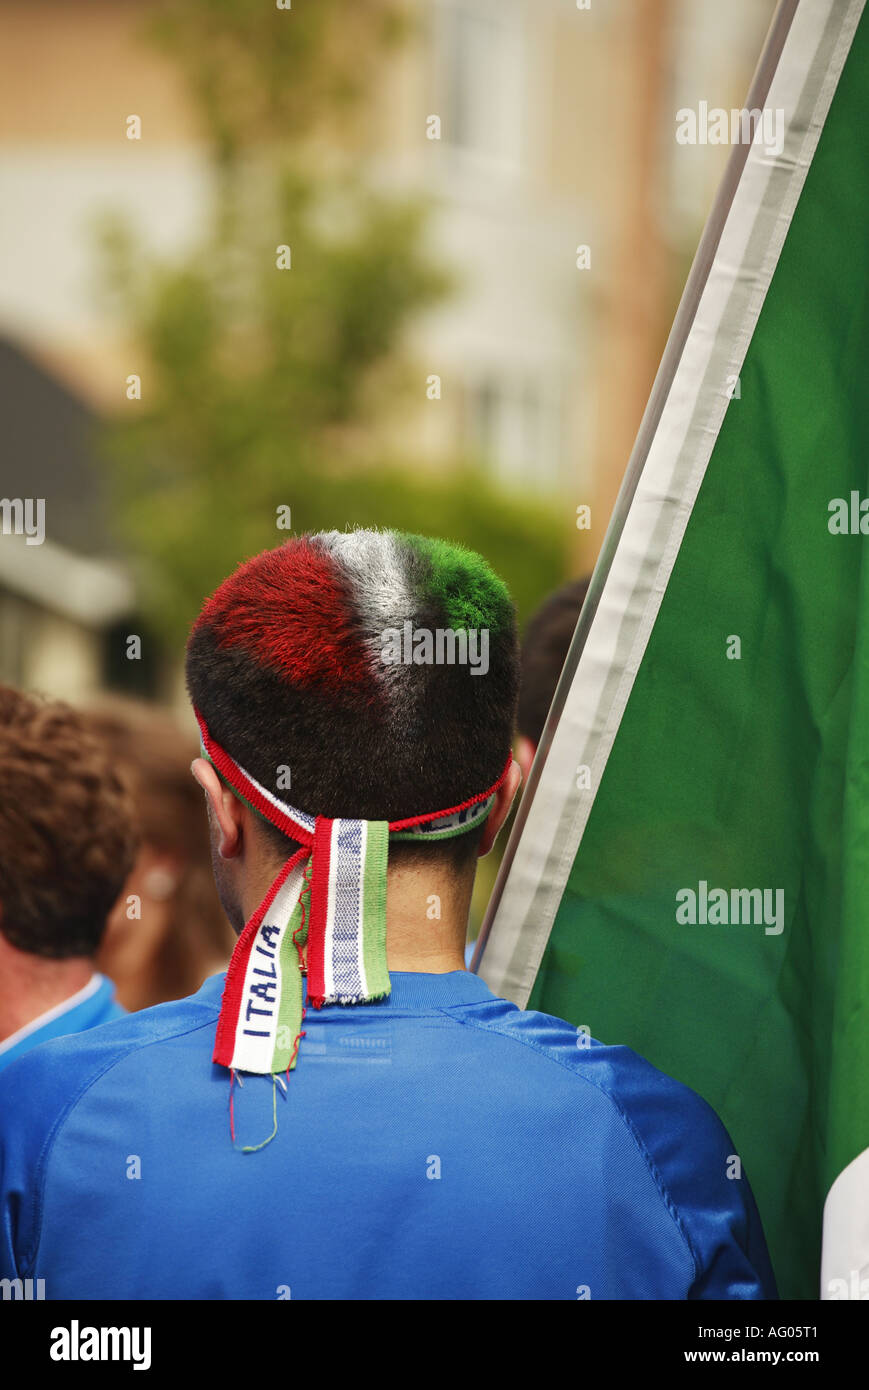 Italian soccer fan Stock Photo